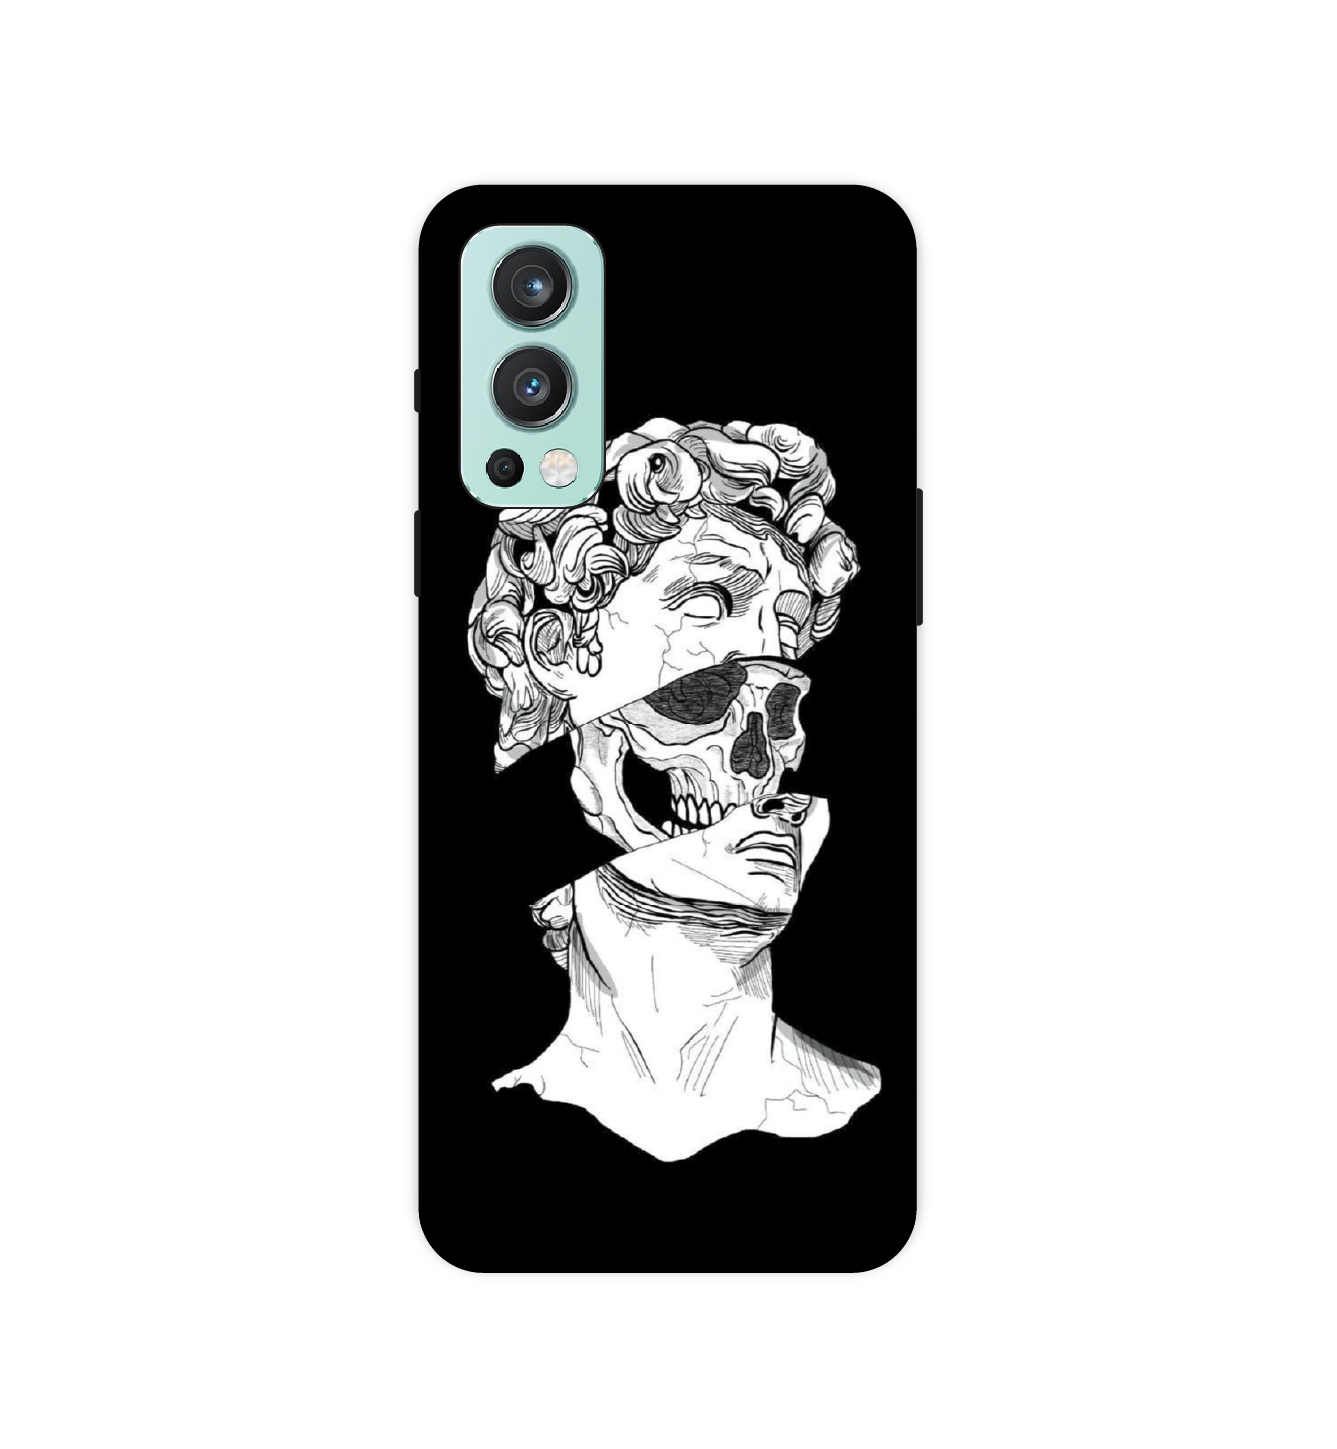 Renaissance Skull - Hard Cases For OnePlus Models